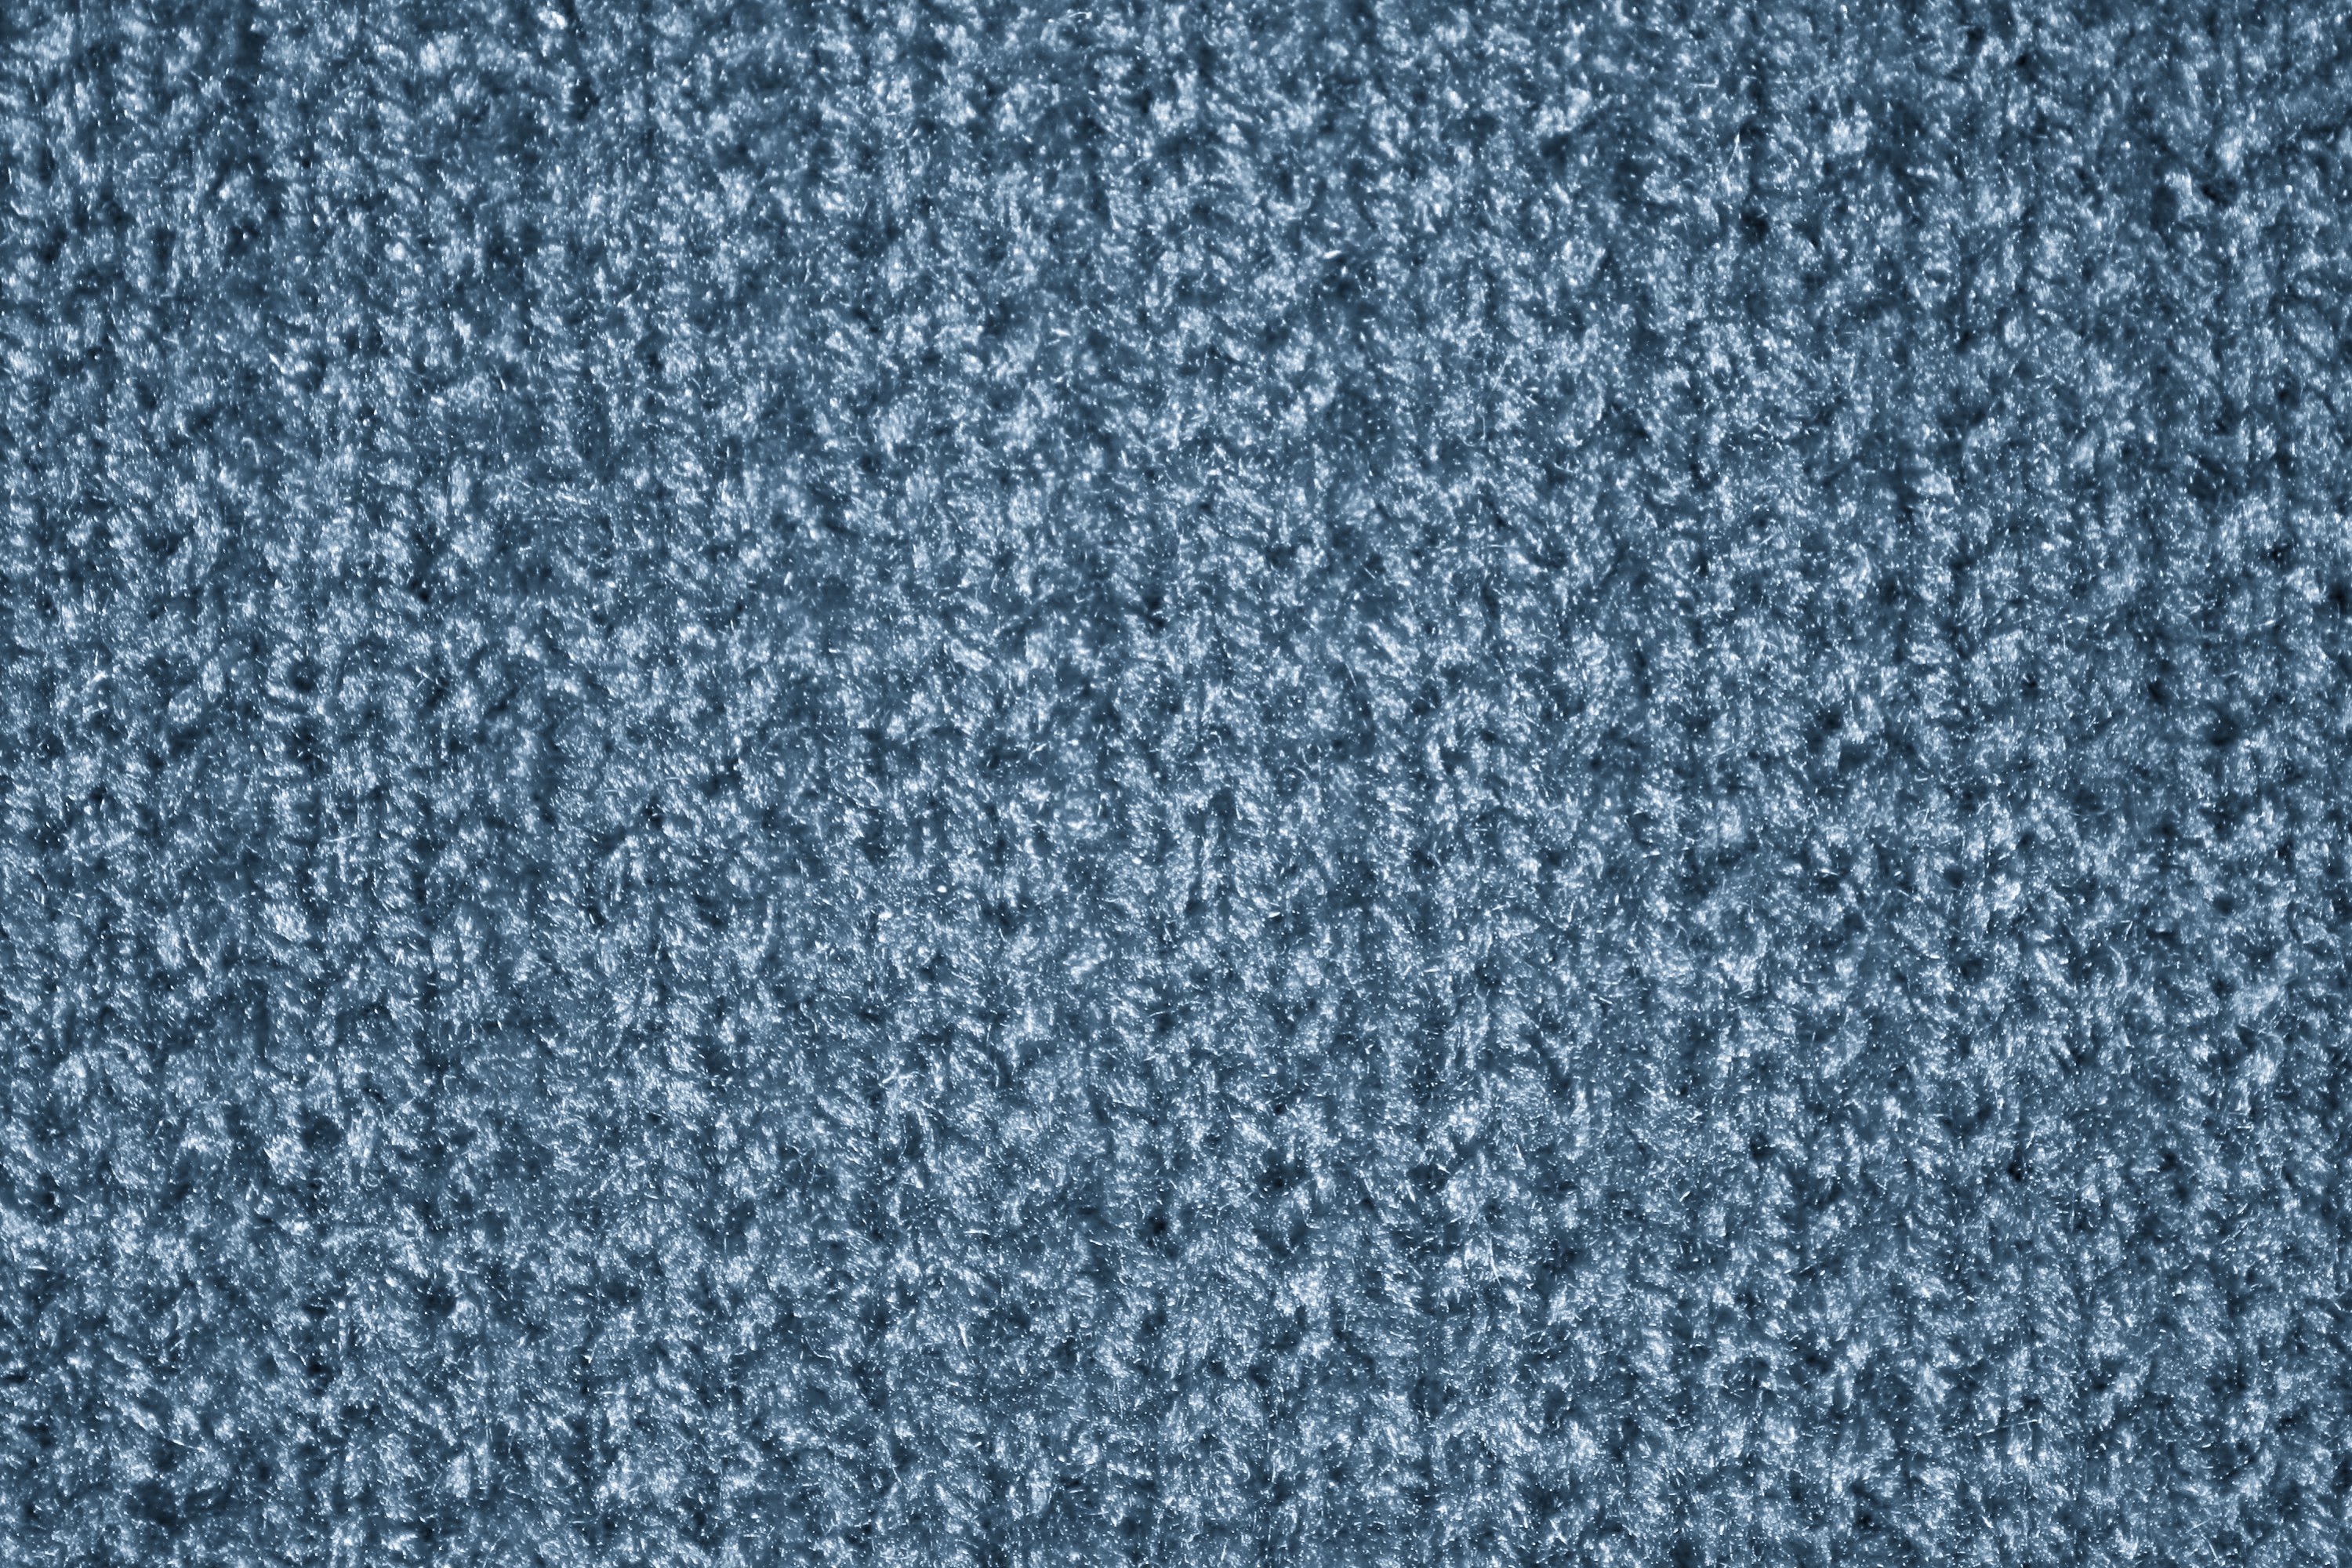 Buy Knitting Wool online in Alberton